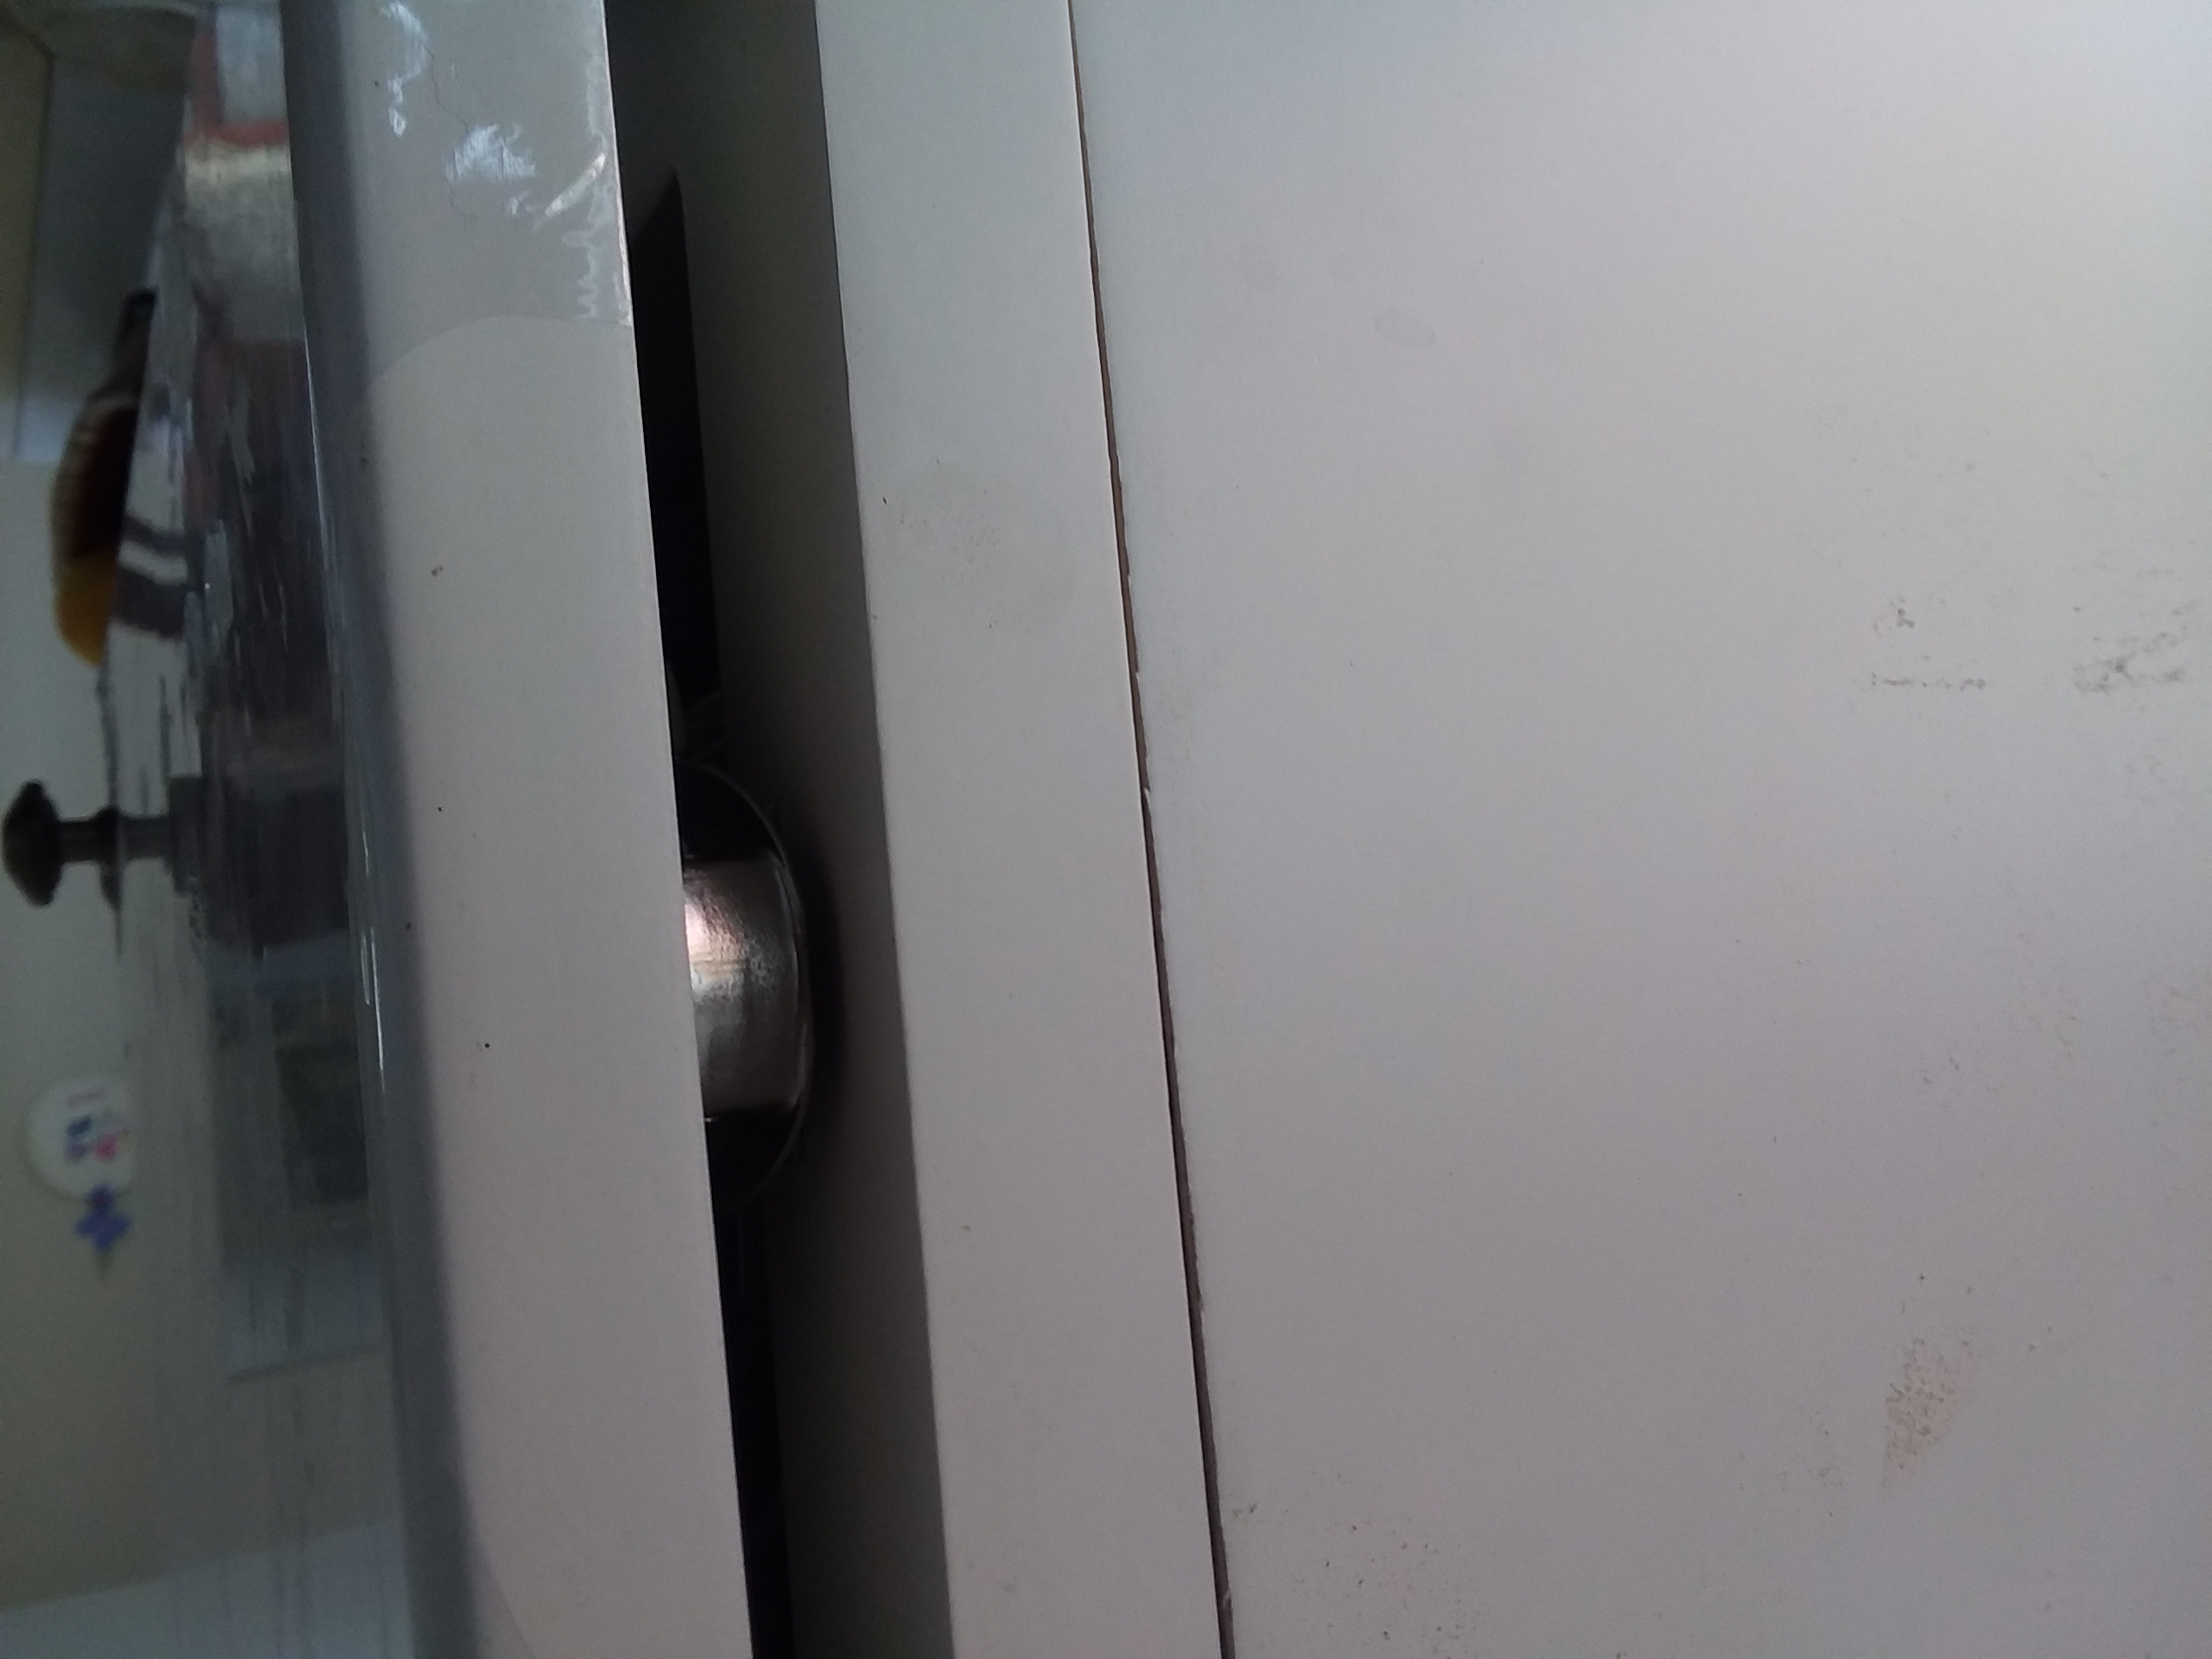 Door hinges not fixed properly